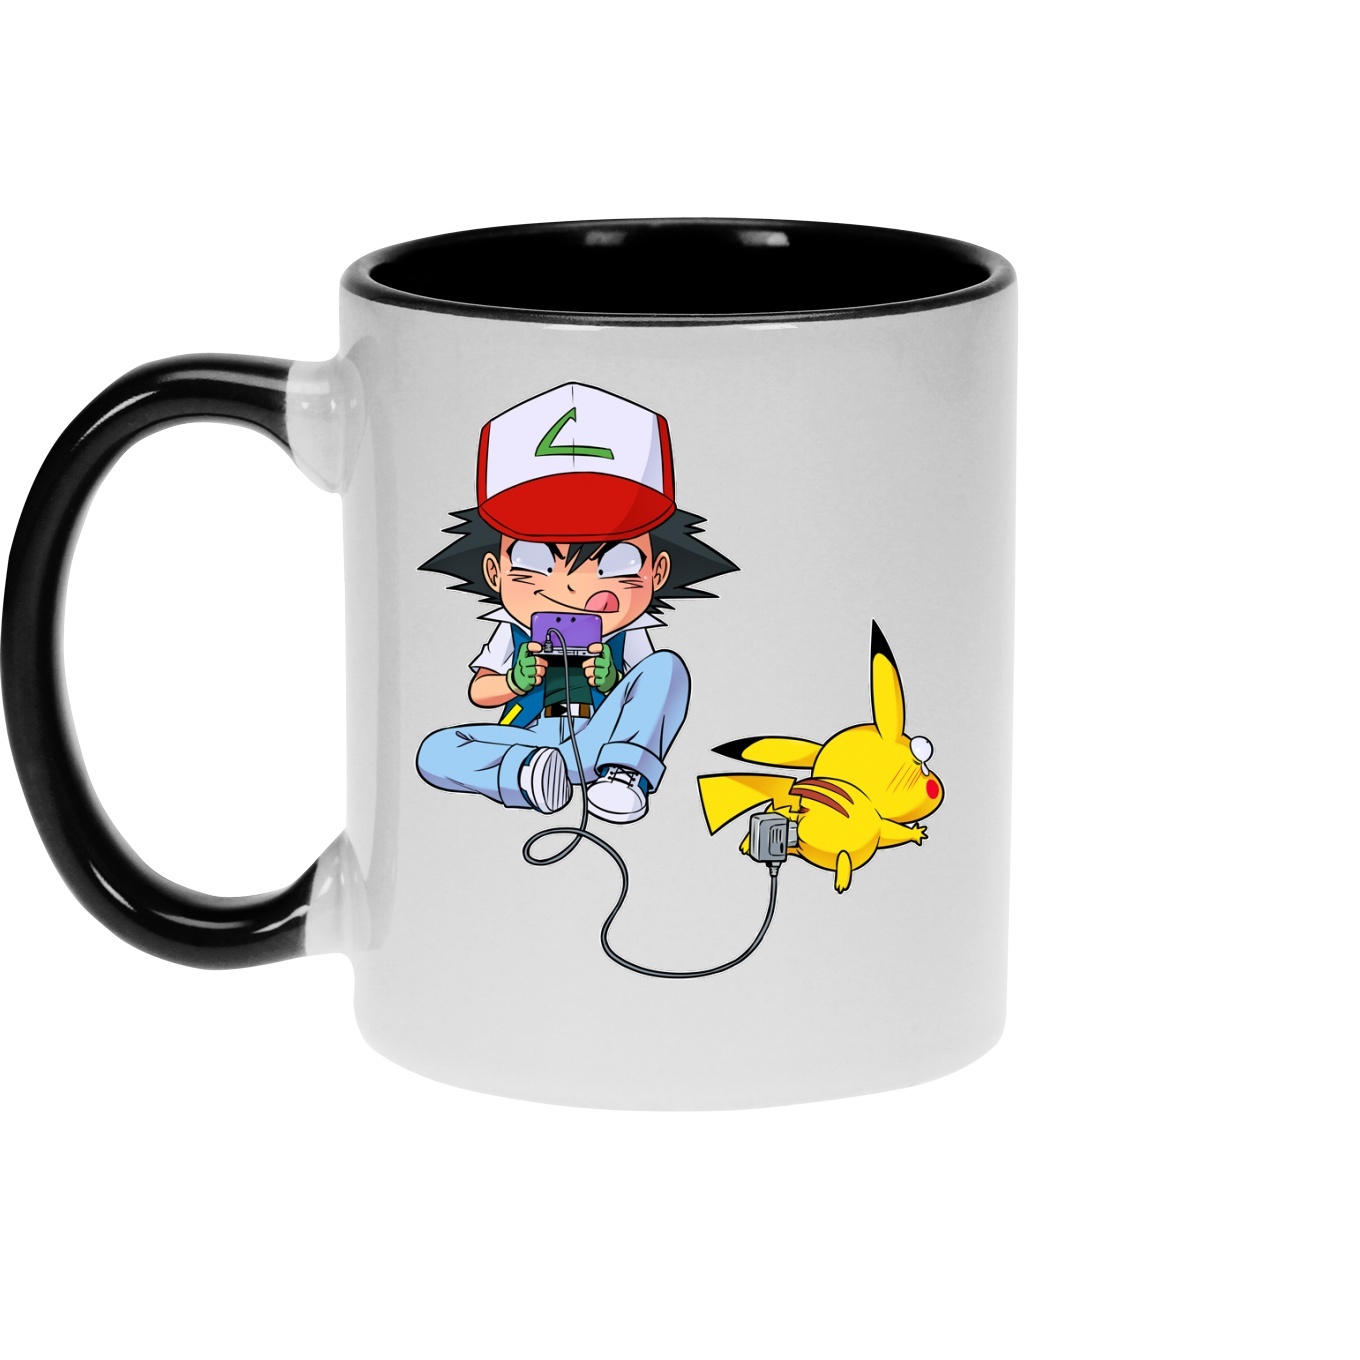 Pikachu Ceramic Coffee Mug – Cartoon Crazy Shop